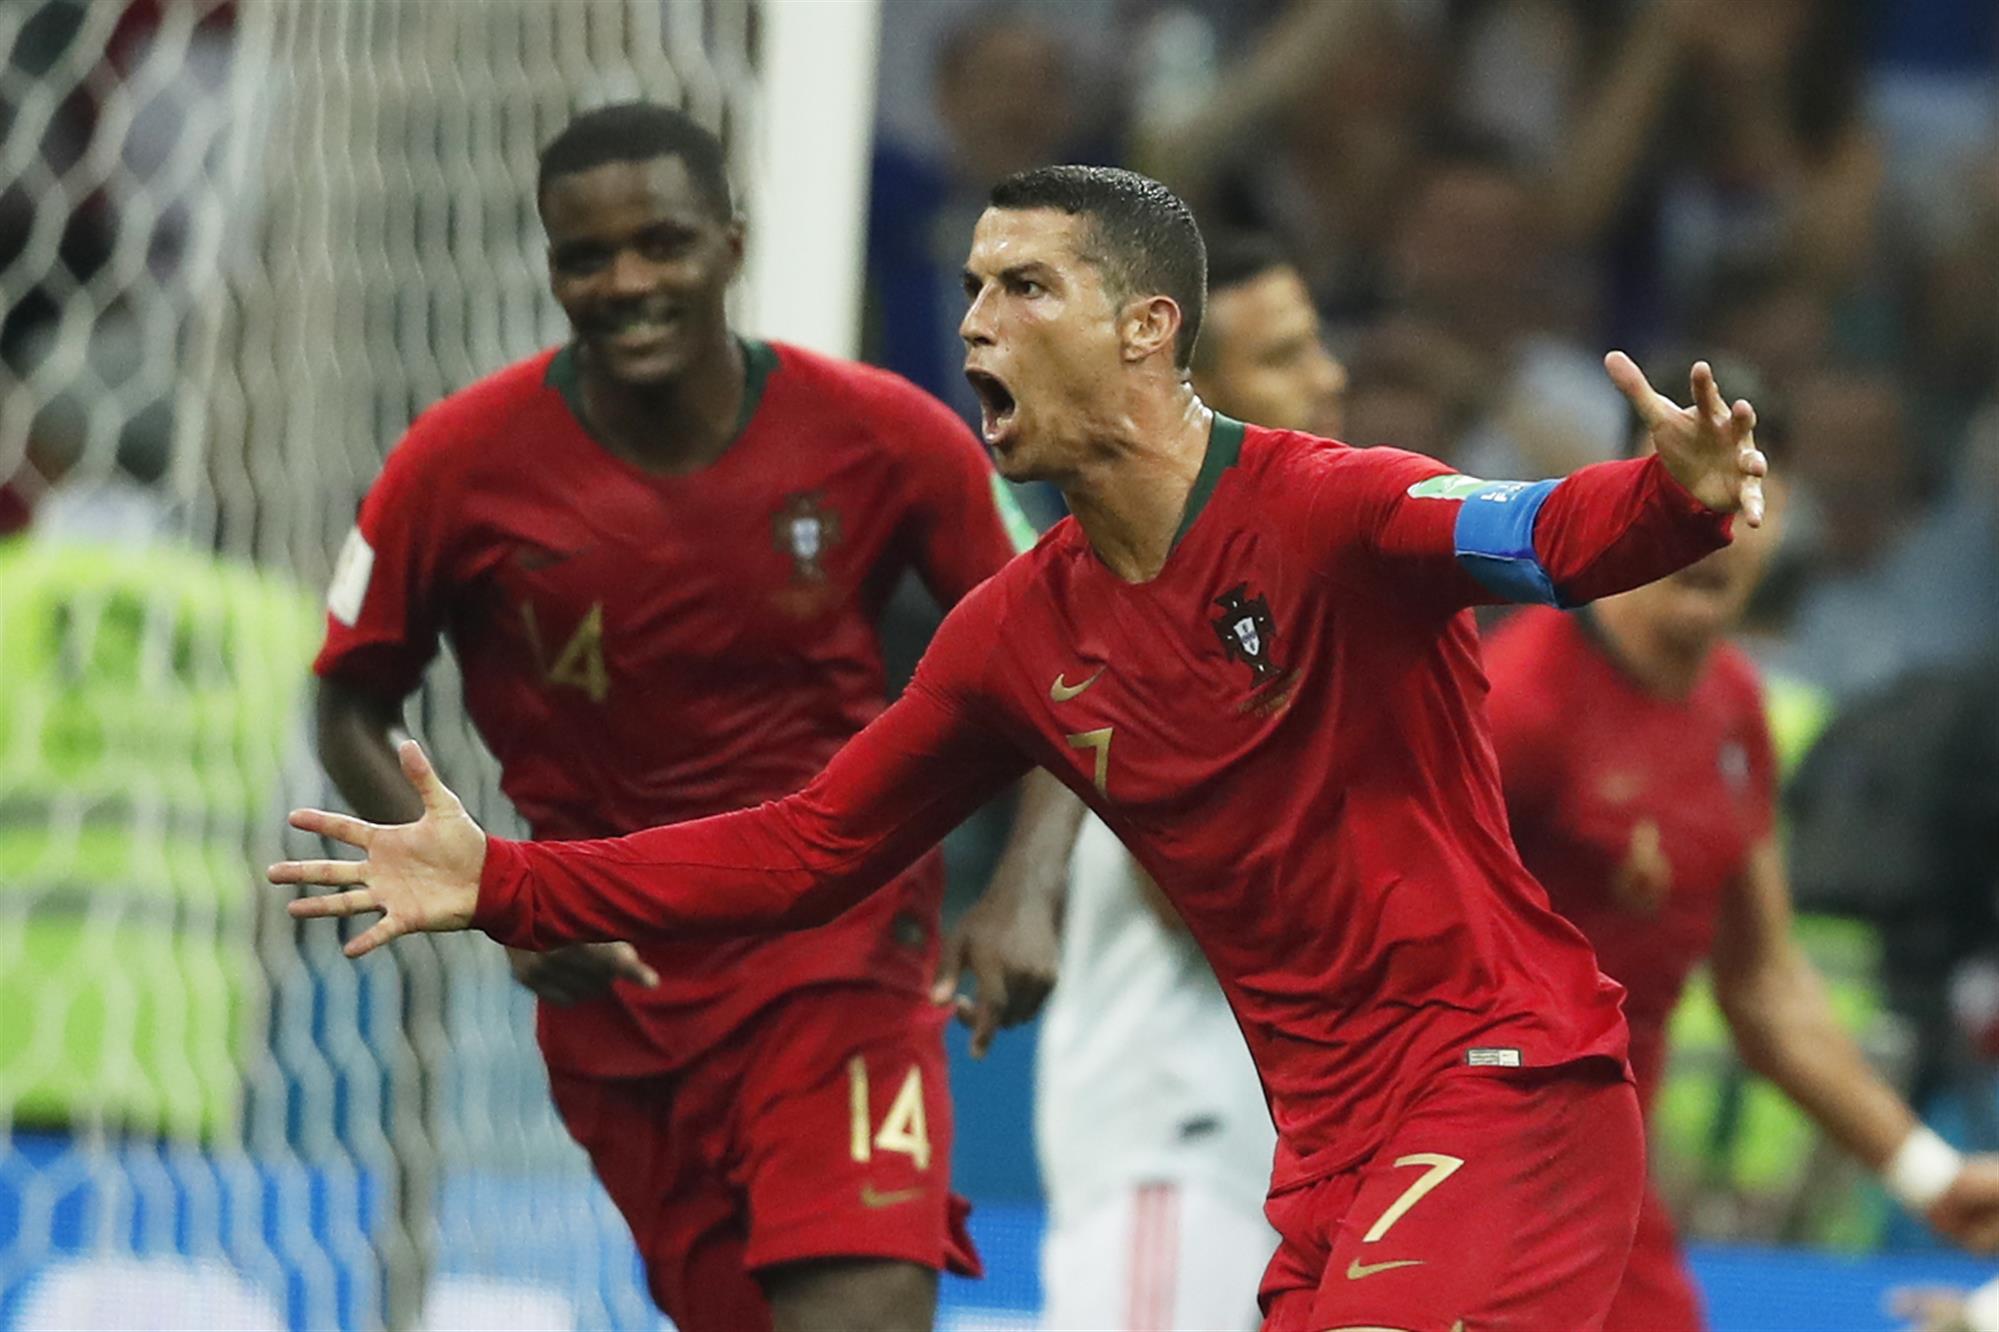 “São milhões que acreditam em ti”: O impressionante relato do terceiro golo de Portugal